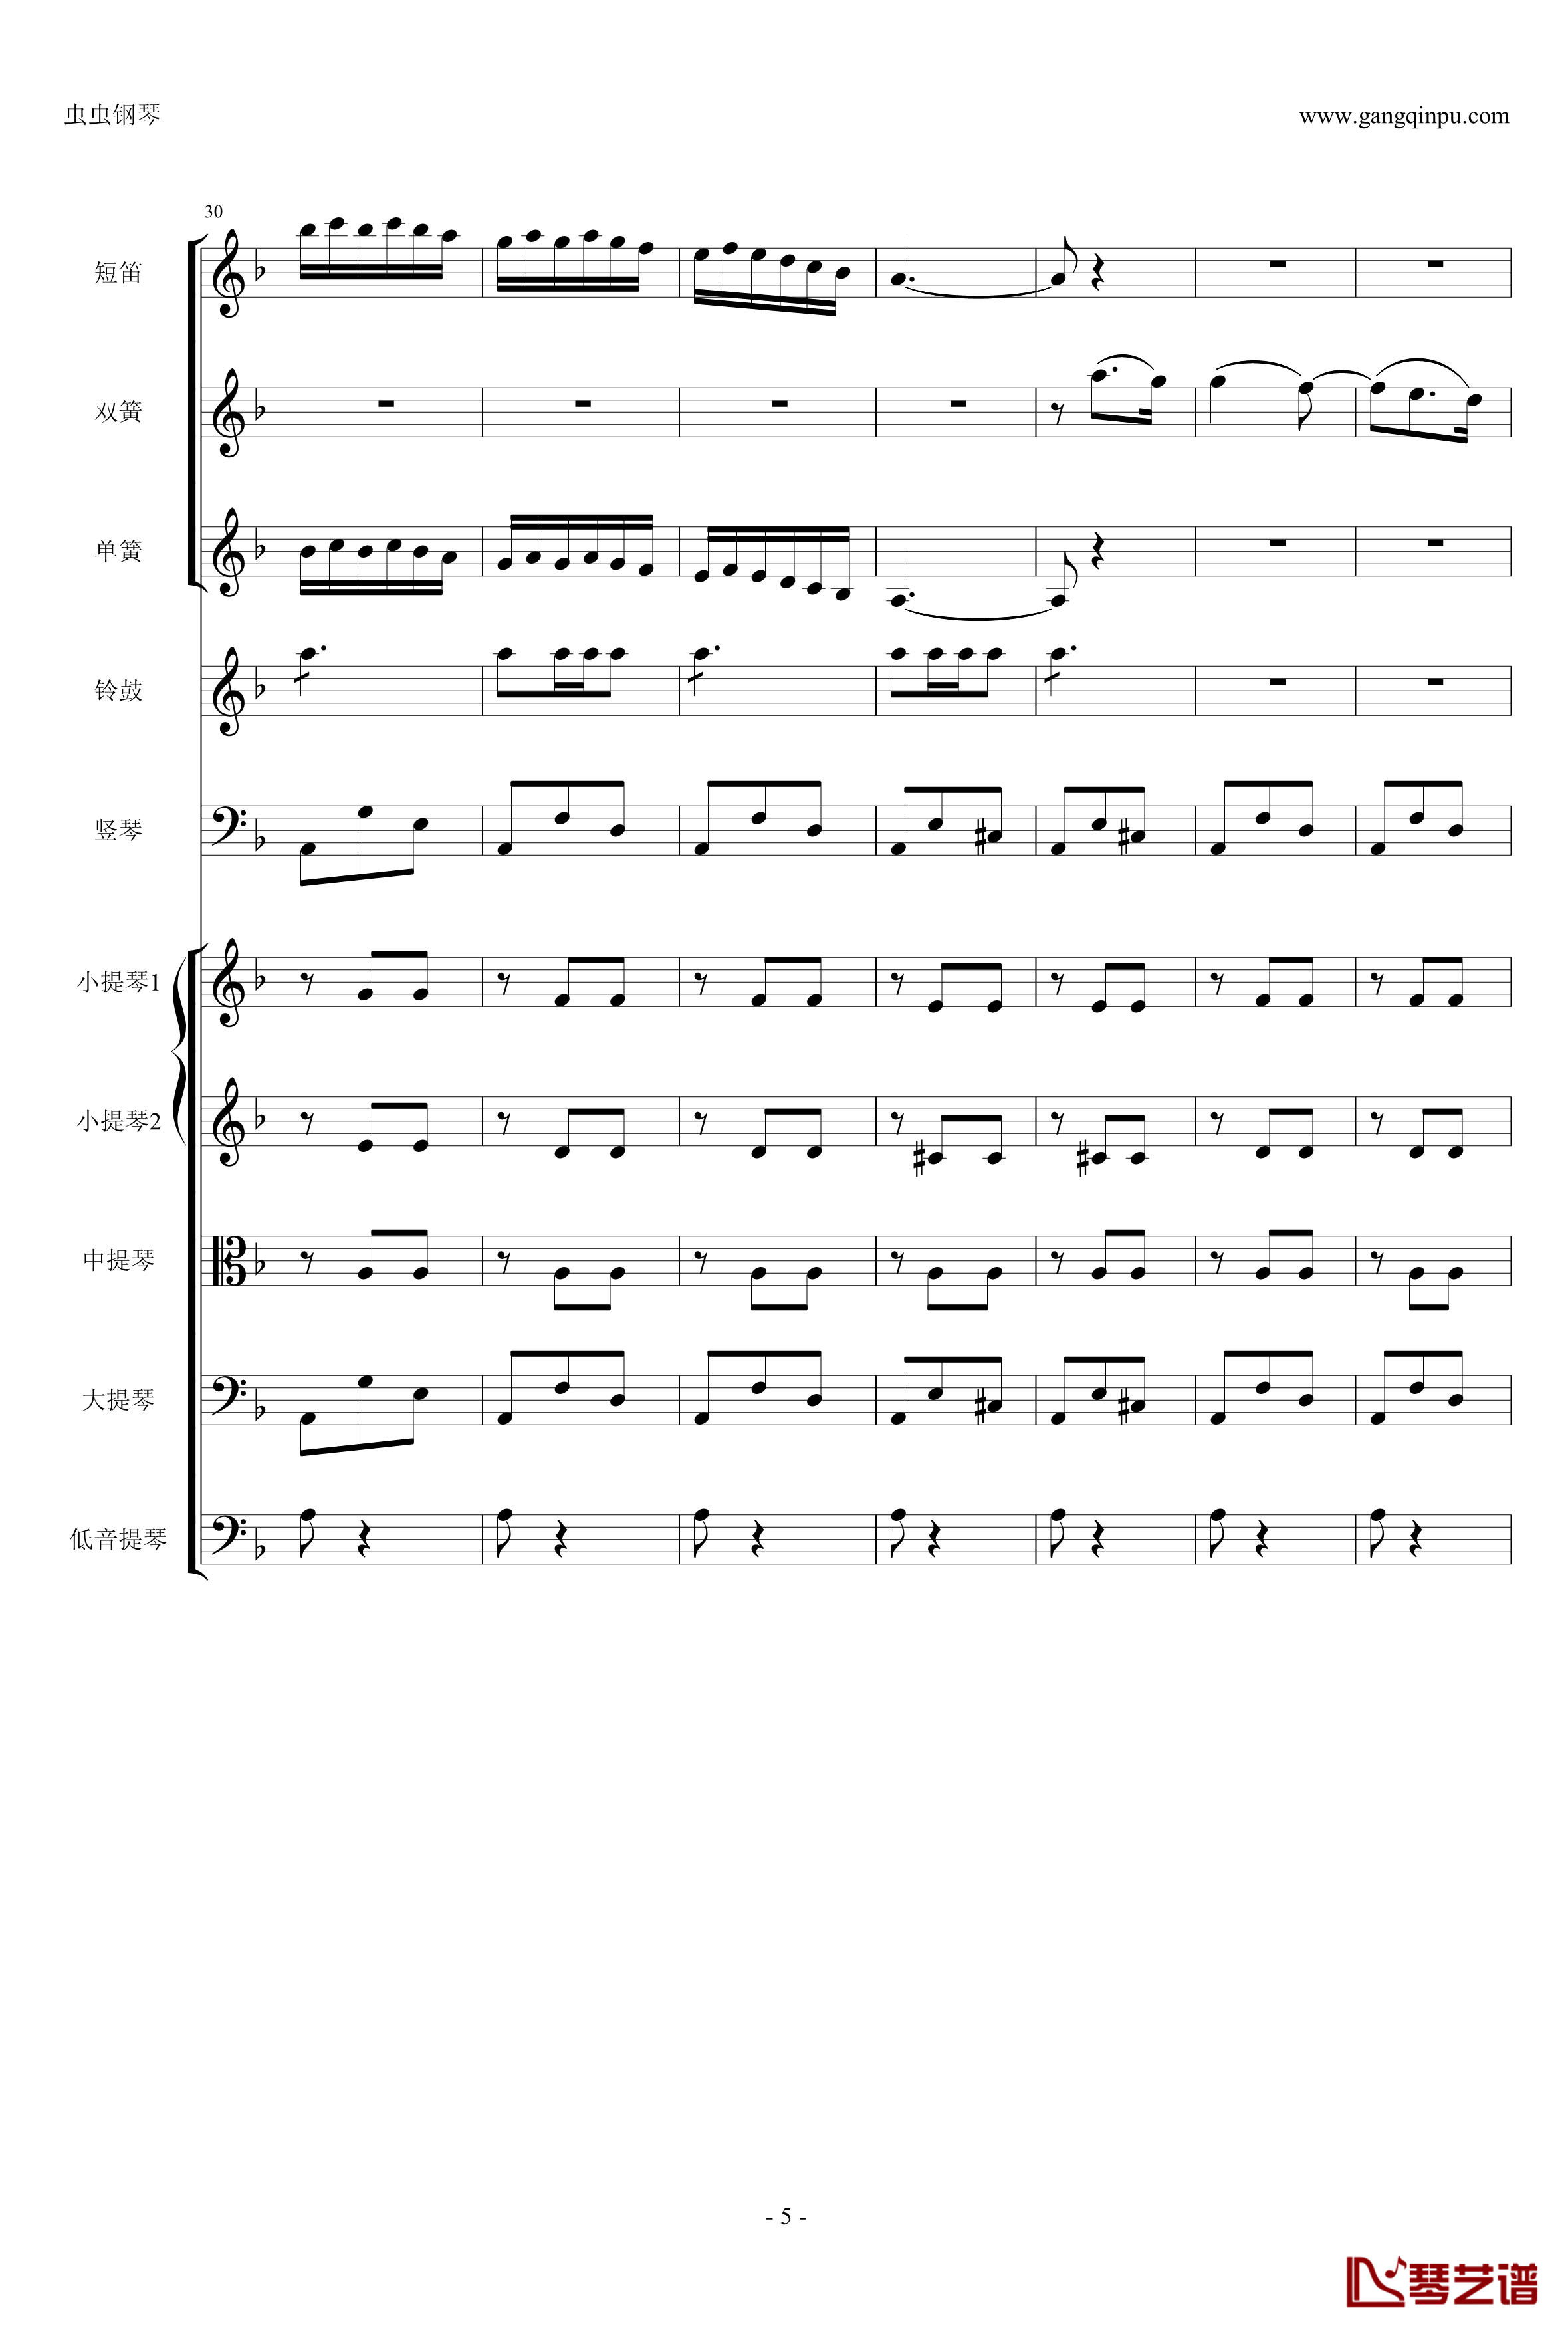 歌剧卡门选段钢琴谱-比才-Bizet- 第四幕间奏曲5